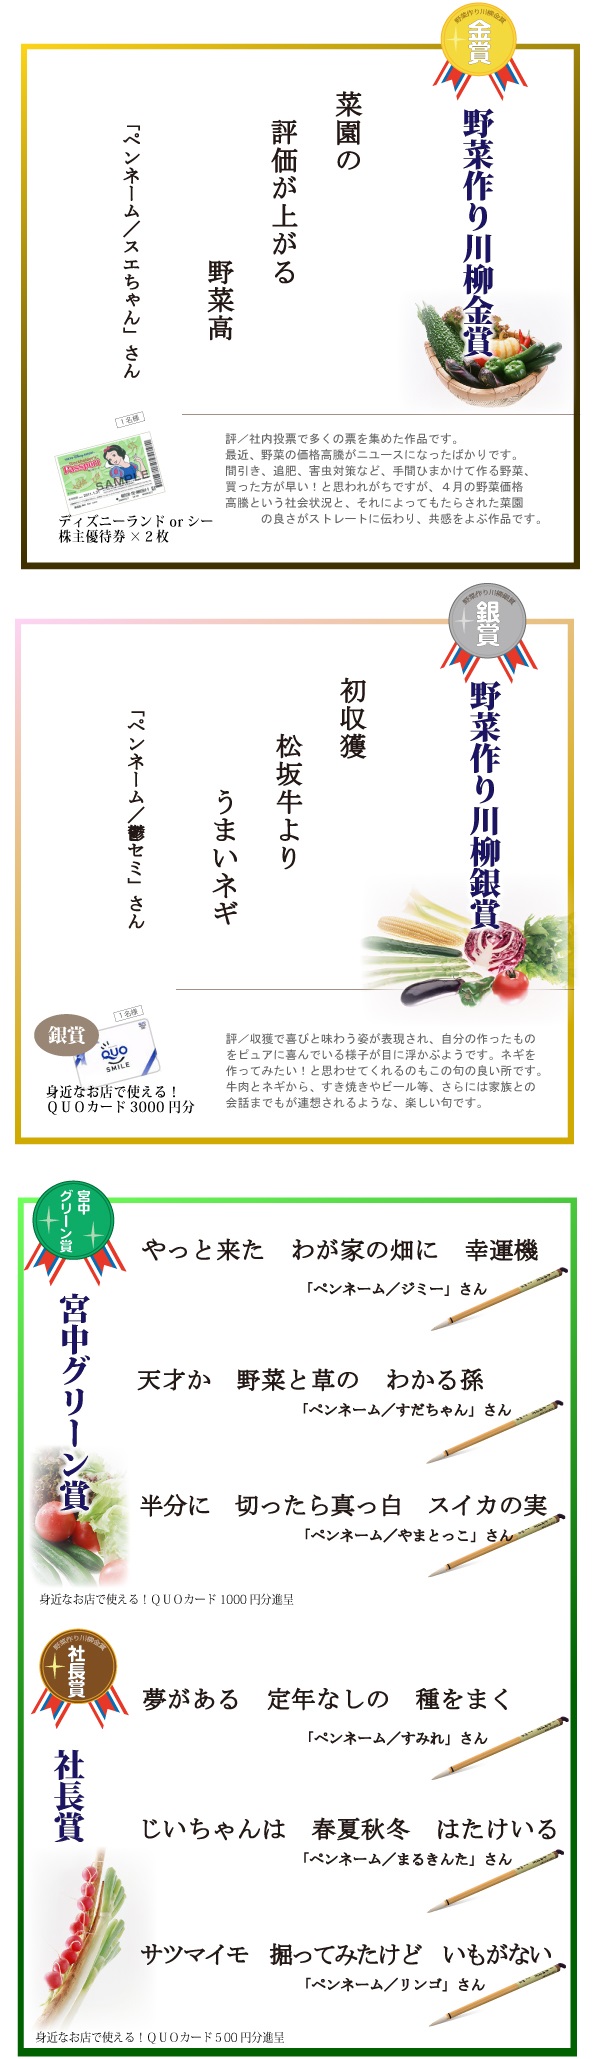 「野菜作り」ウェブで川柳 結果発表